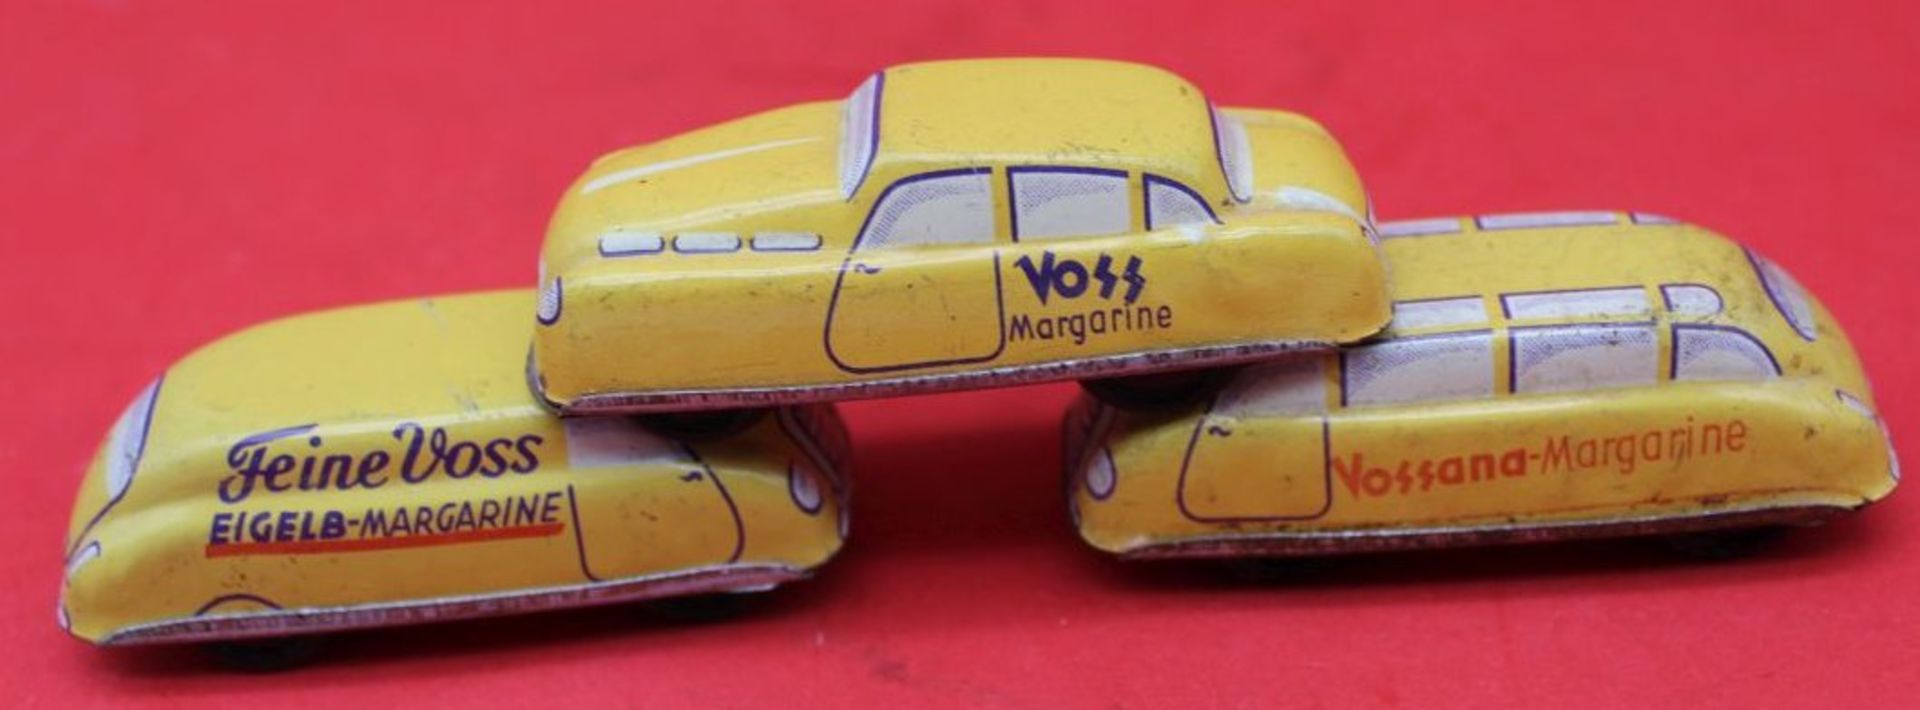 3x kl. Blechautos "Voss"Margarine, tw. bespielt, L-7 cm, Vorkrieg - Image 2 of 2